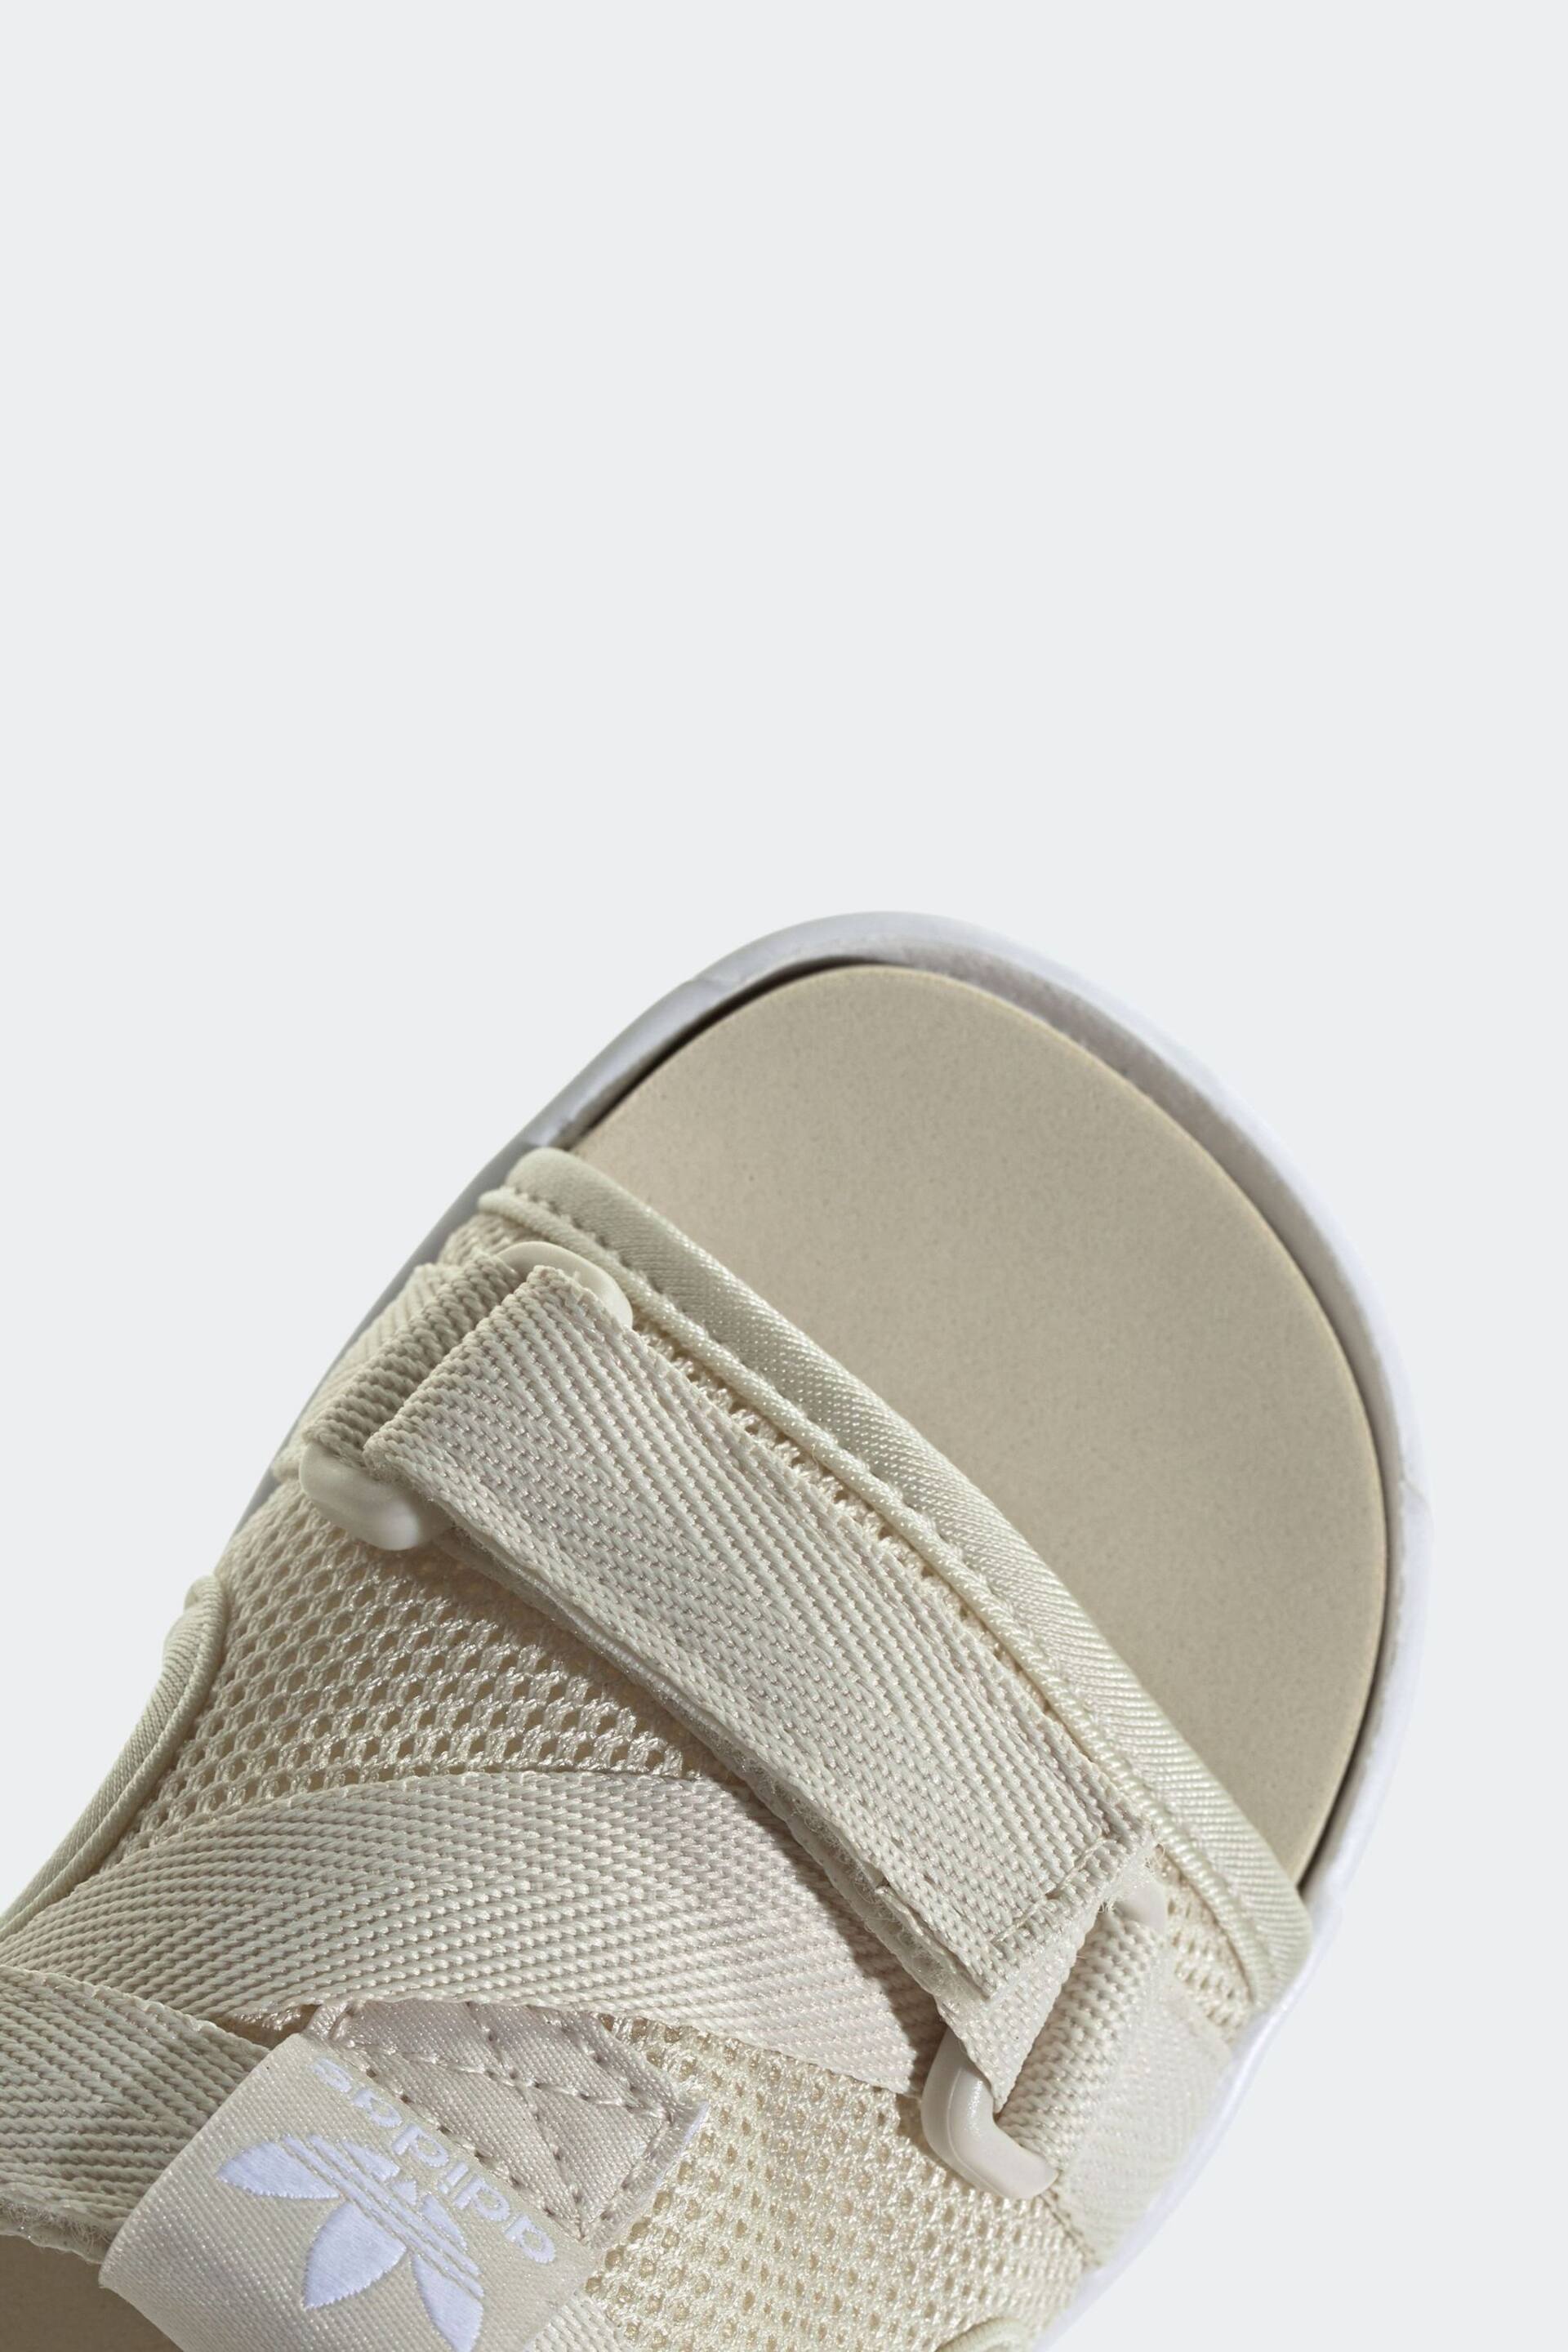 adidas Originals 360 3.0 Black Sandals - Image 8 of 9